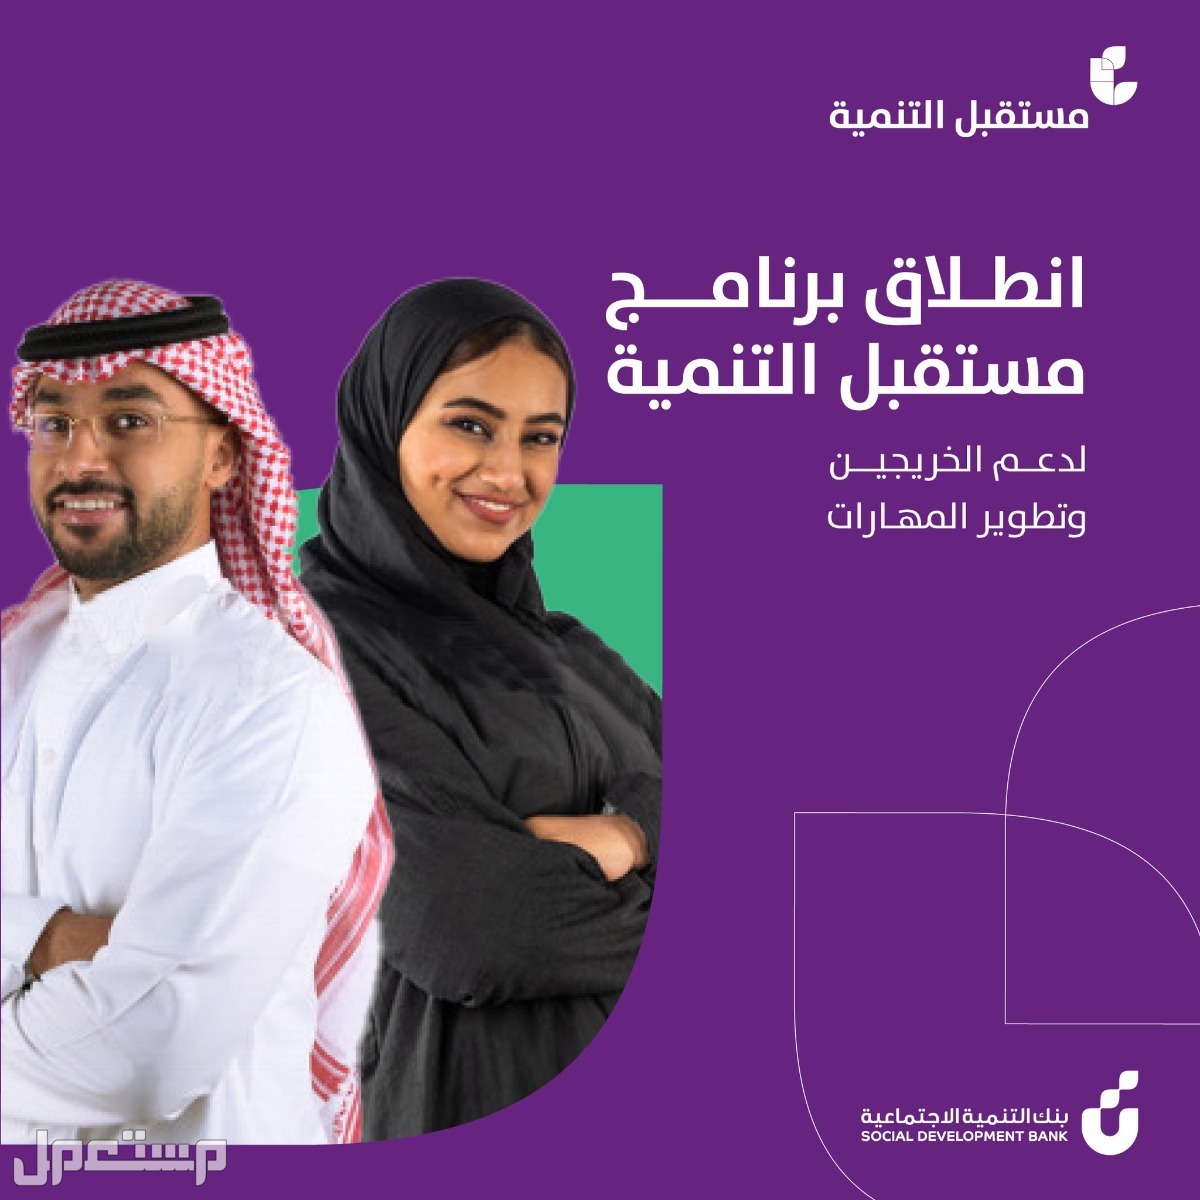 كيفية التقديم على برنامج مستقبل التنمية للخريجين في بنك التنمية الاجتماعية في الإمارات العربية المتحدة التقديم على برنامج مستقبل التنمية للخريجين